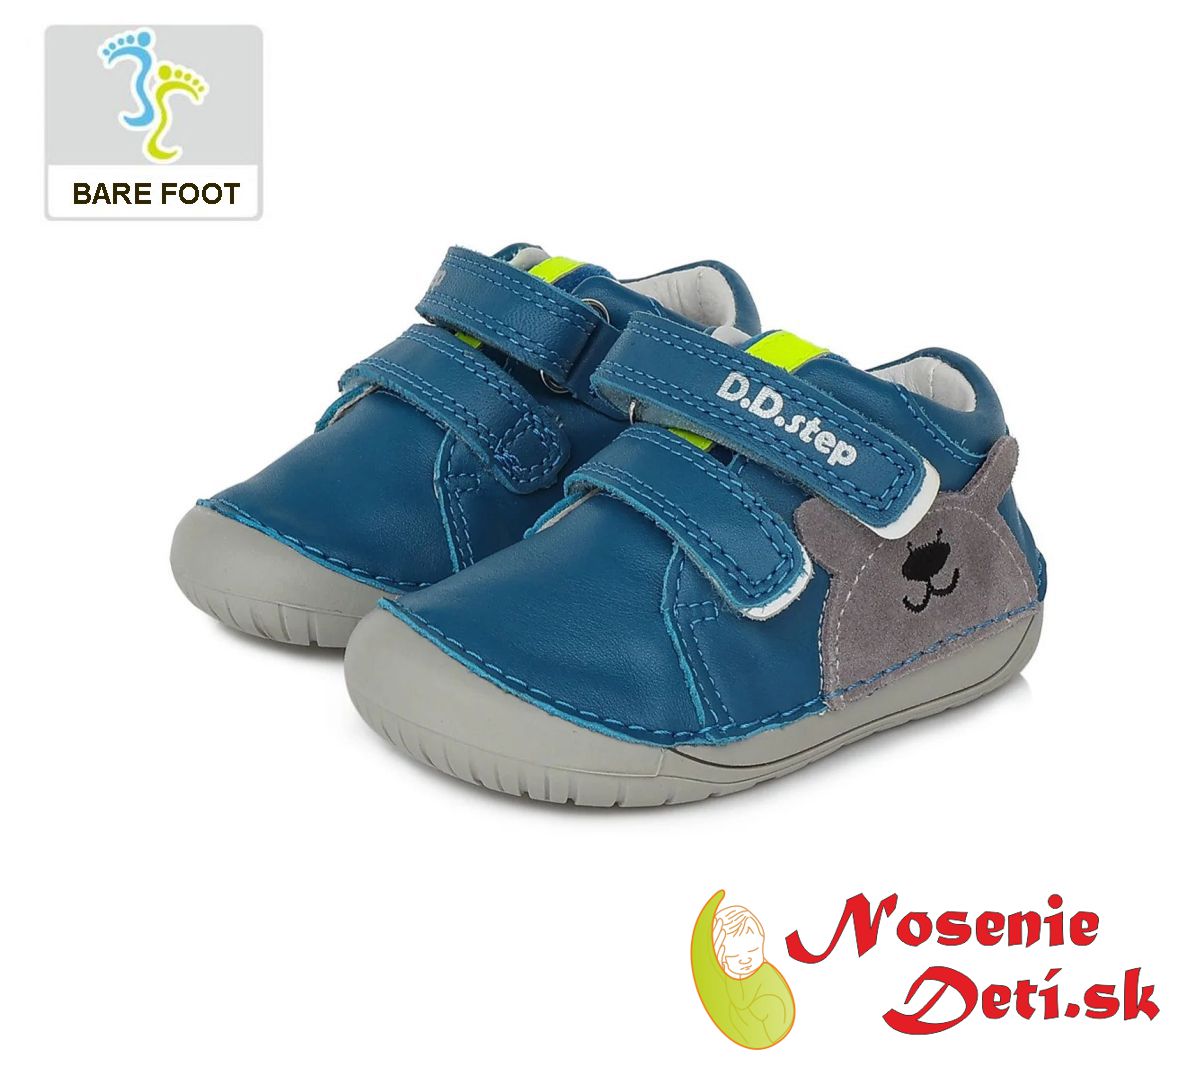 Barefoot chlapecká obuv DD Step boty Šedé Levík 070-381A